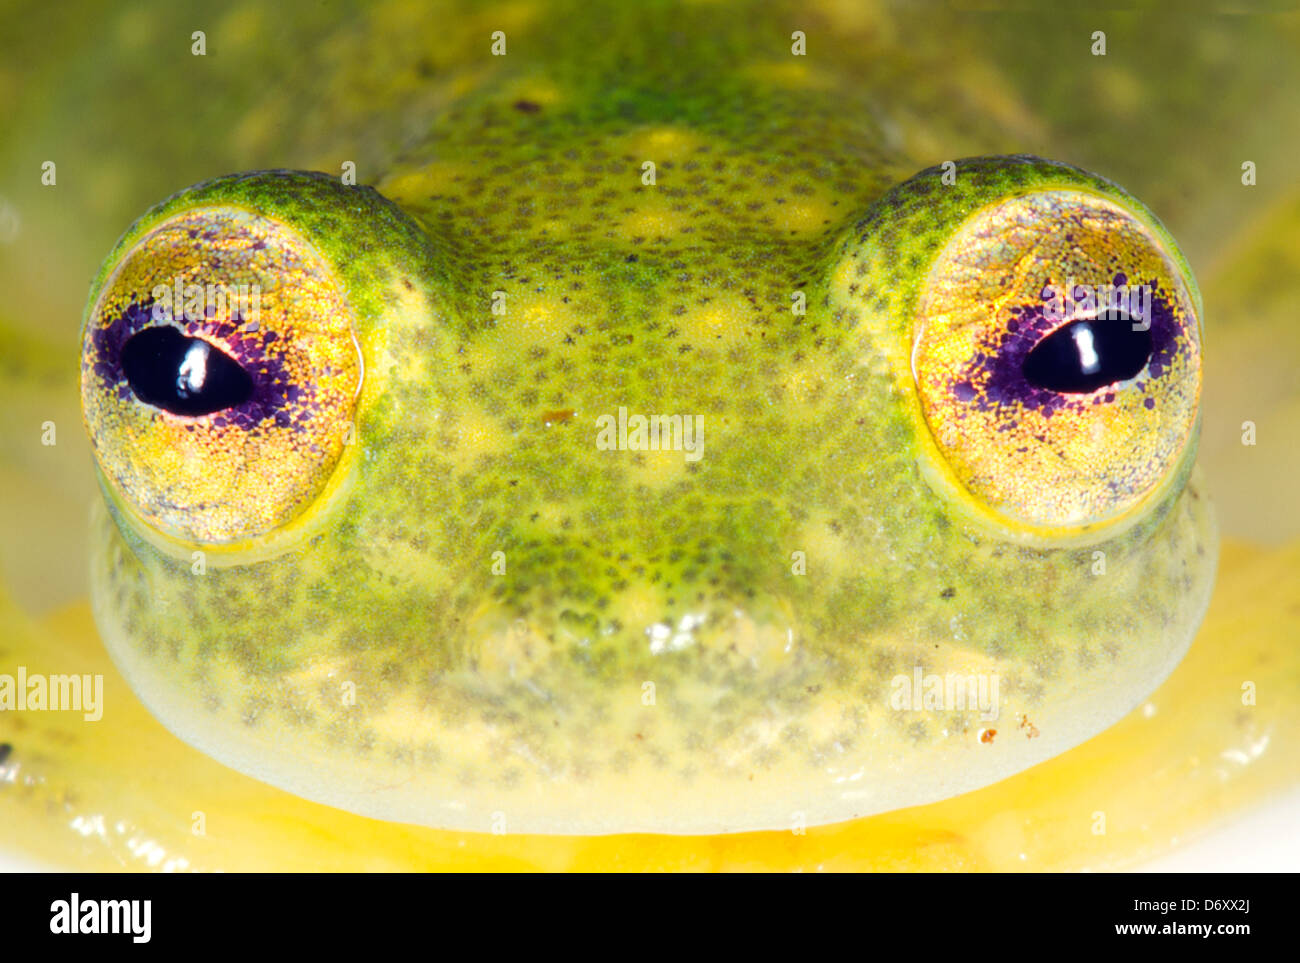 Visage d'une grenouille en verre (Hyalinobatrachium sp.) de l'Amazonie équatorienne Banque D'Images